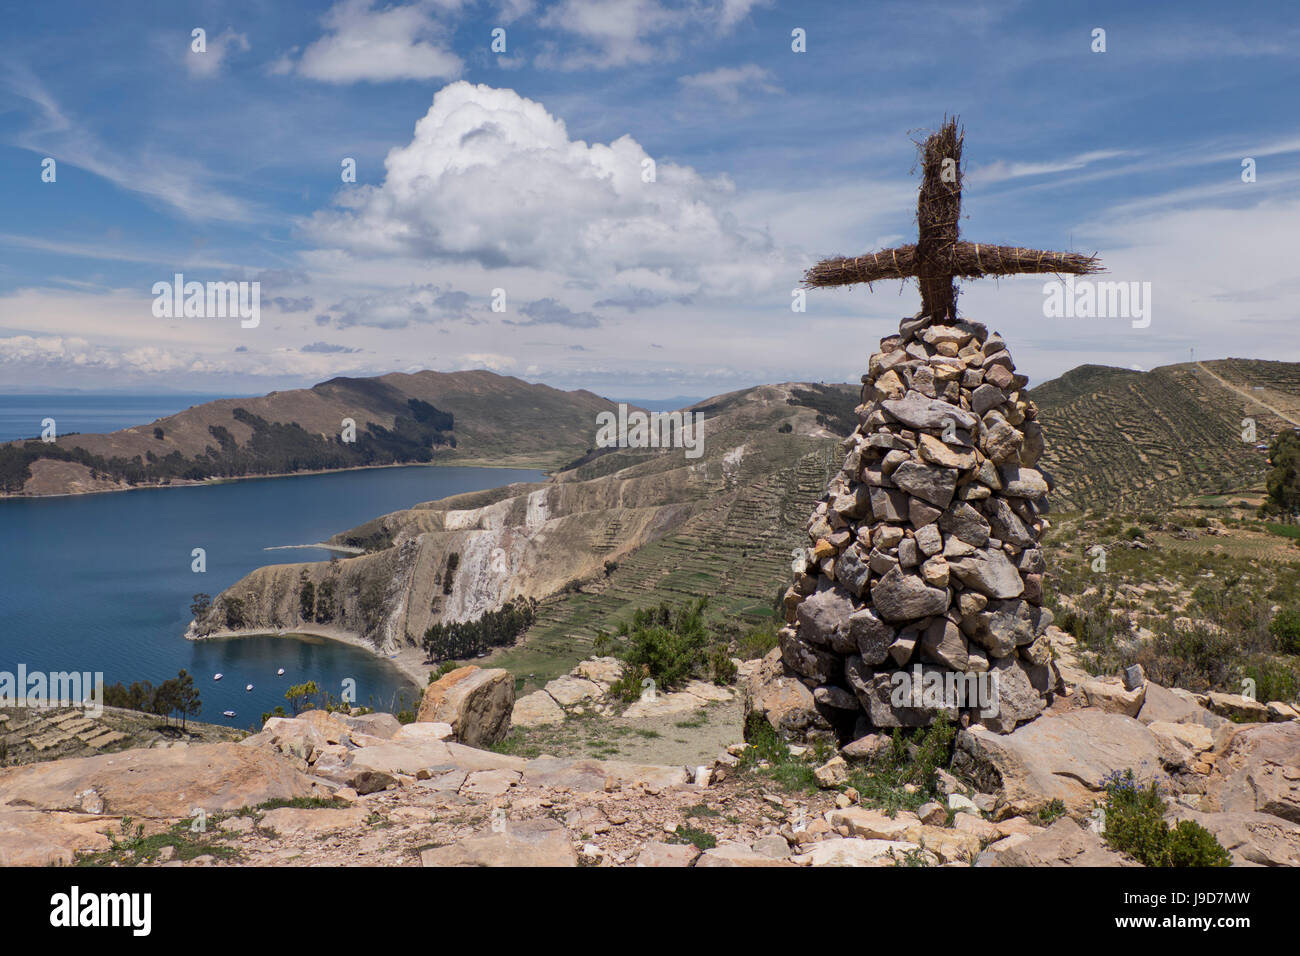 Cross et de l'autel sur l'île du Soleil sur le lac Titicaca, Bolivie, Amérique du Sud Banque D'Images